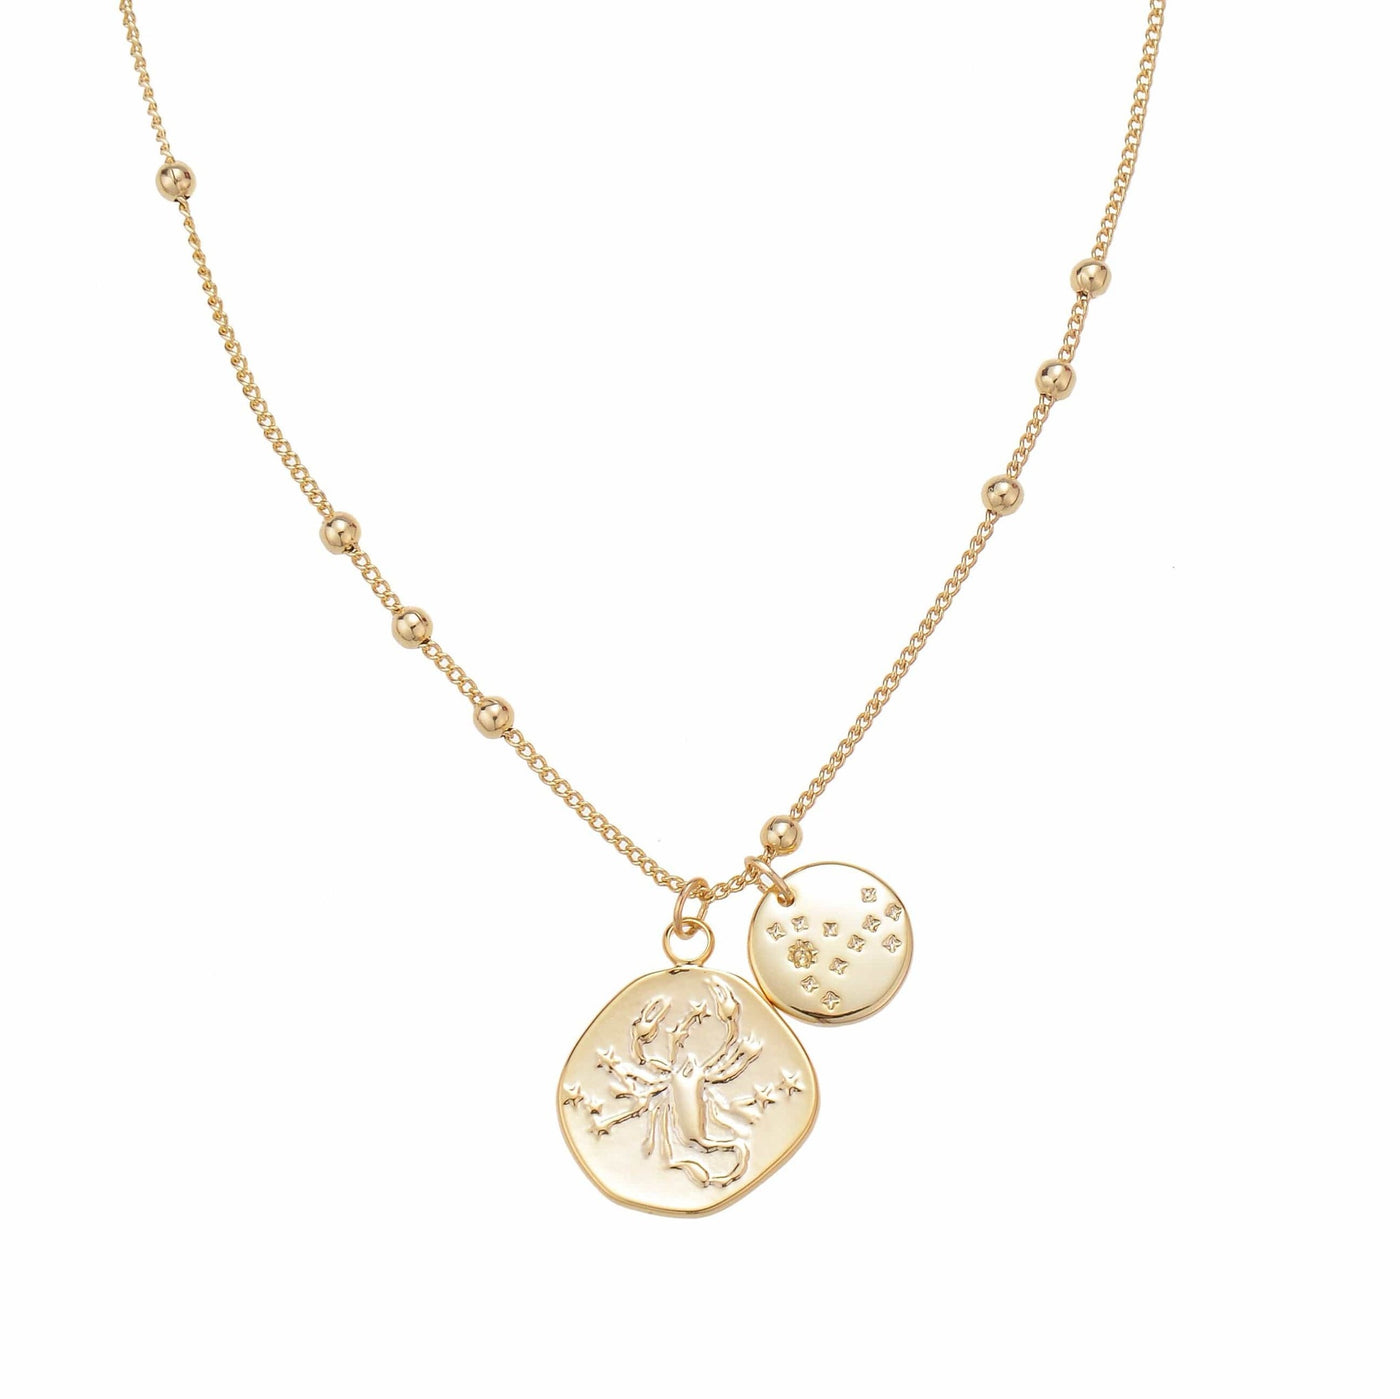 Scorpio Zodiac Coin Necklace gift for those born October 23 - November 21